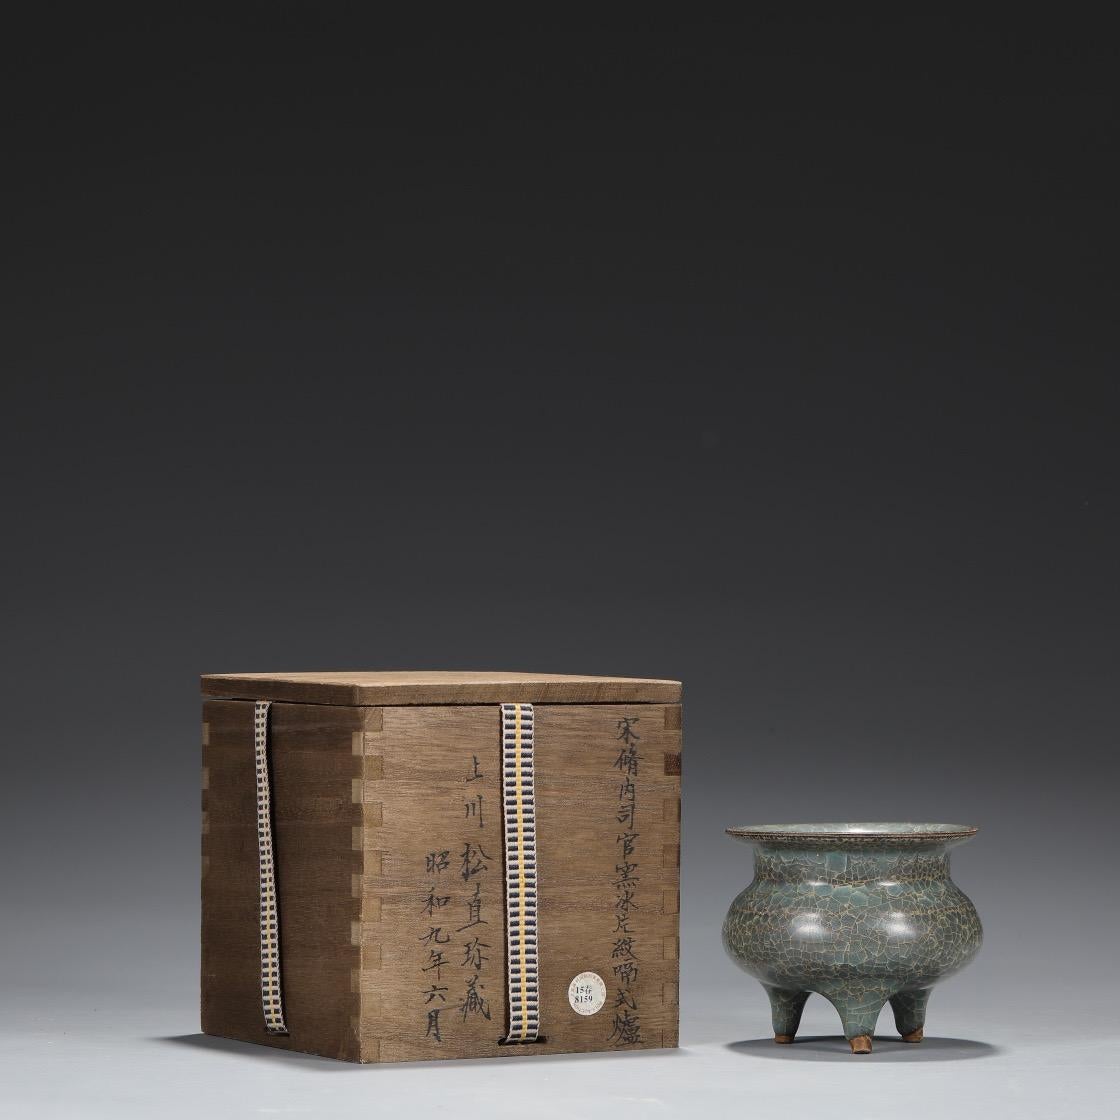 Cette ancienne collection de Xiu Nei Si Official Kiln Ice Cracking Glaze Pattern Burner de la dynastie des Song du Sud est très spéciale et d'une grande qualité d'exécution. 

Les fours étaient essentiels pour la cuisson des céramiques, et chaque